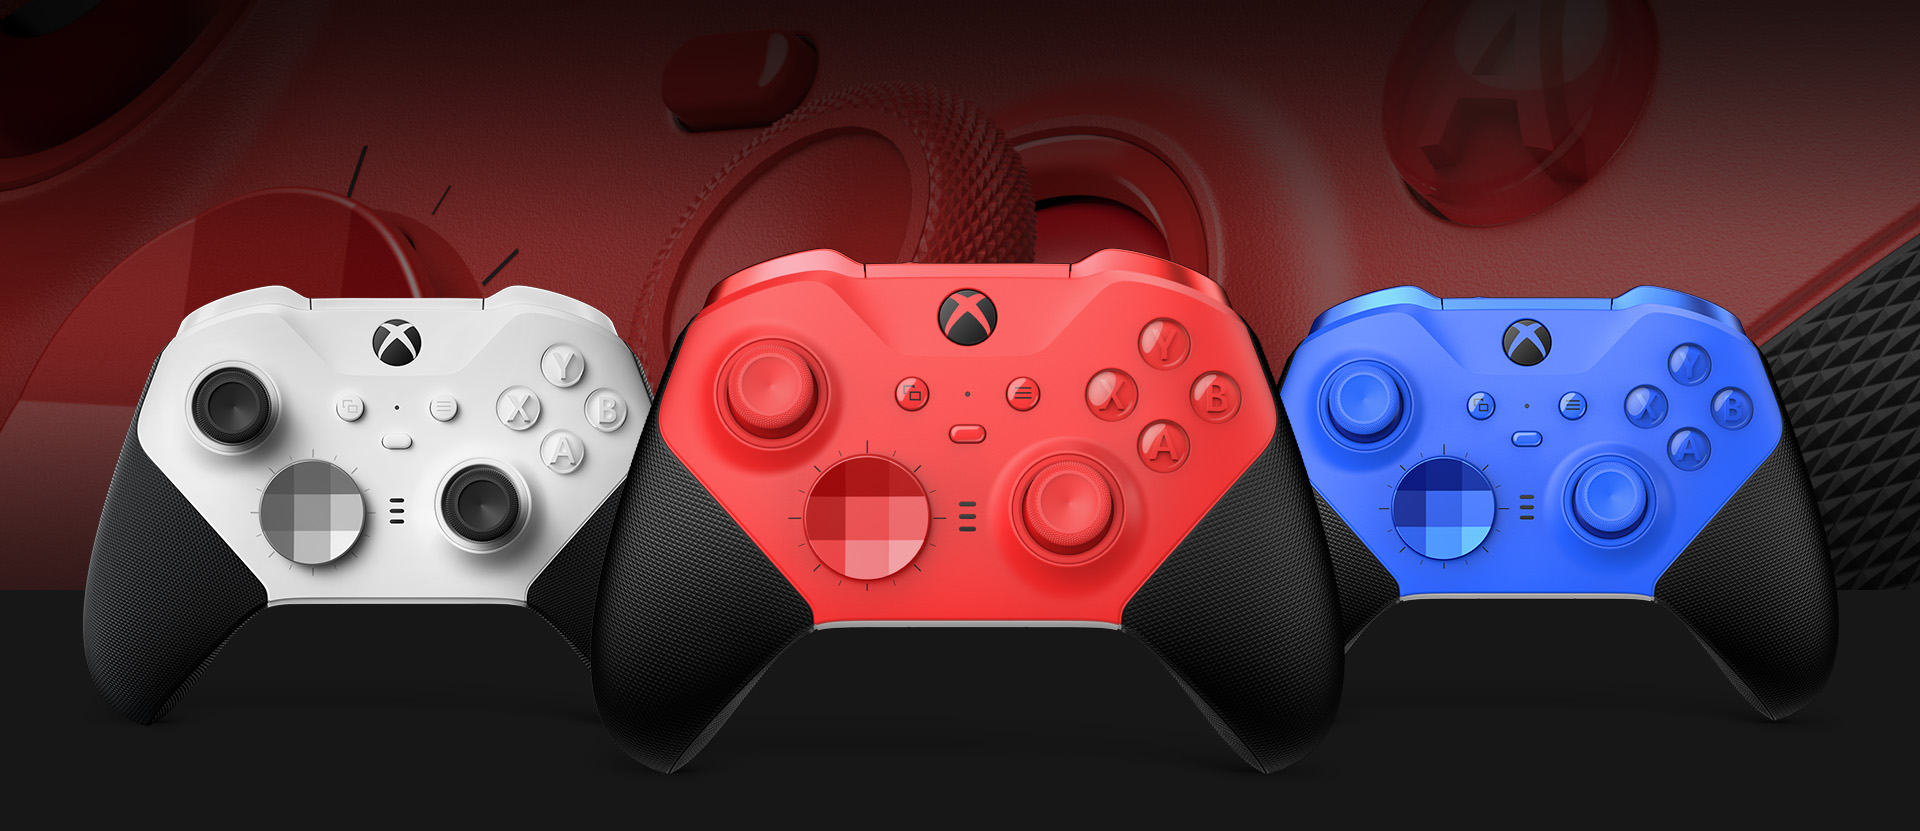 Vooraanzicht van de Xbox Elite draadloze controller Series 2 - Core (rood) met daarnaast andere kleuropties. Een close-up van de duimsticks van de controller en getextureerde greep wordt op de achtergrond getoond.